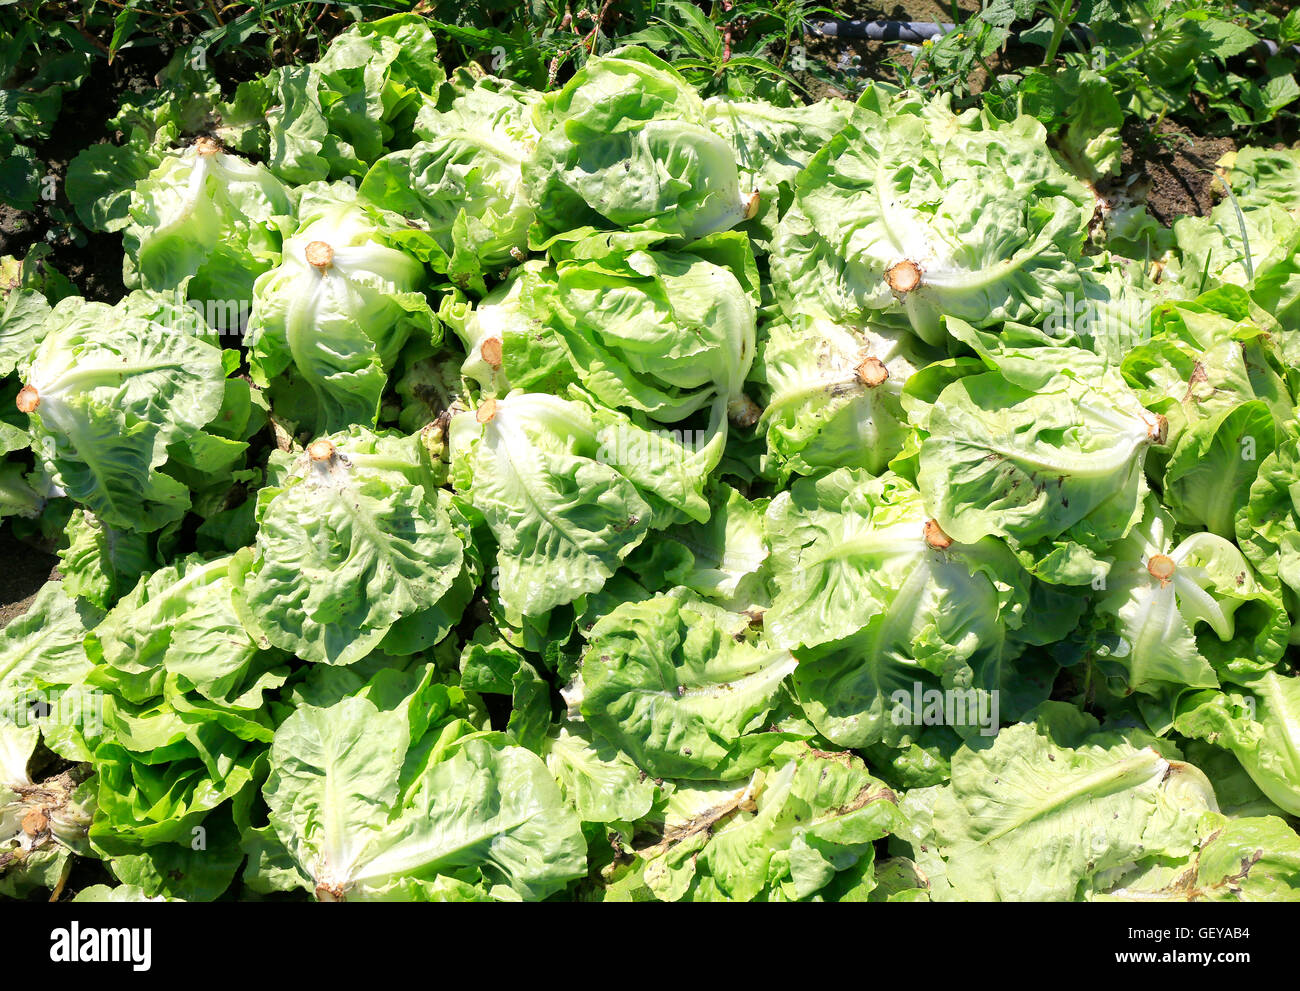 Harvesting lettuce Stock Photo